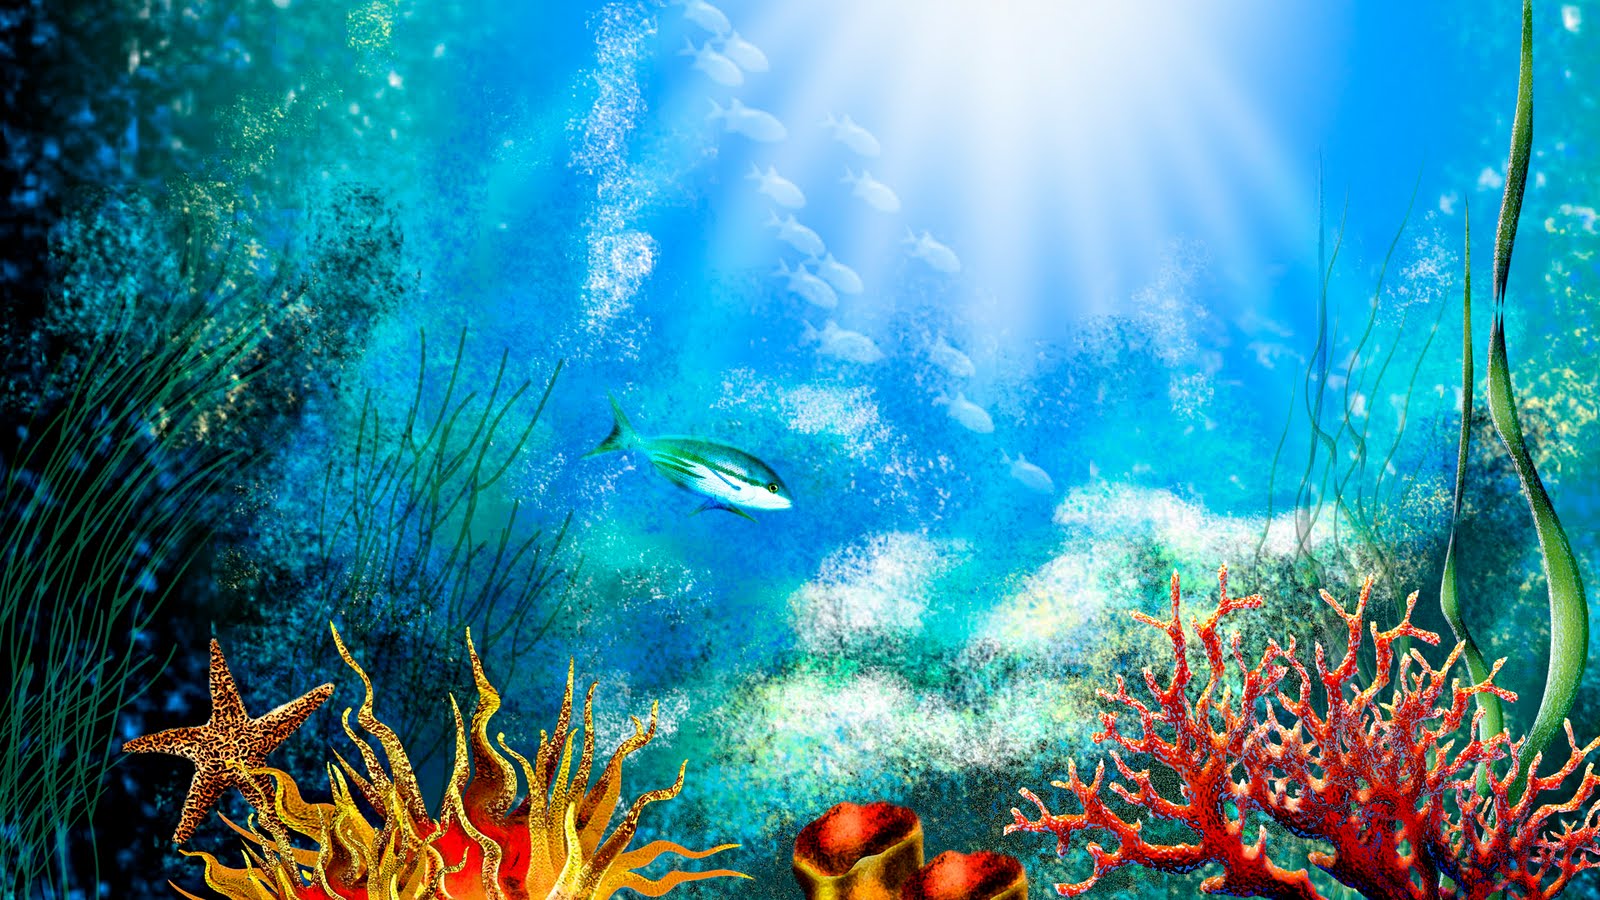 Free 3D Wallpapers Download: Aquarium hd wallpaper, aquarium wallpaper